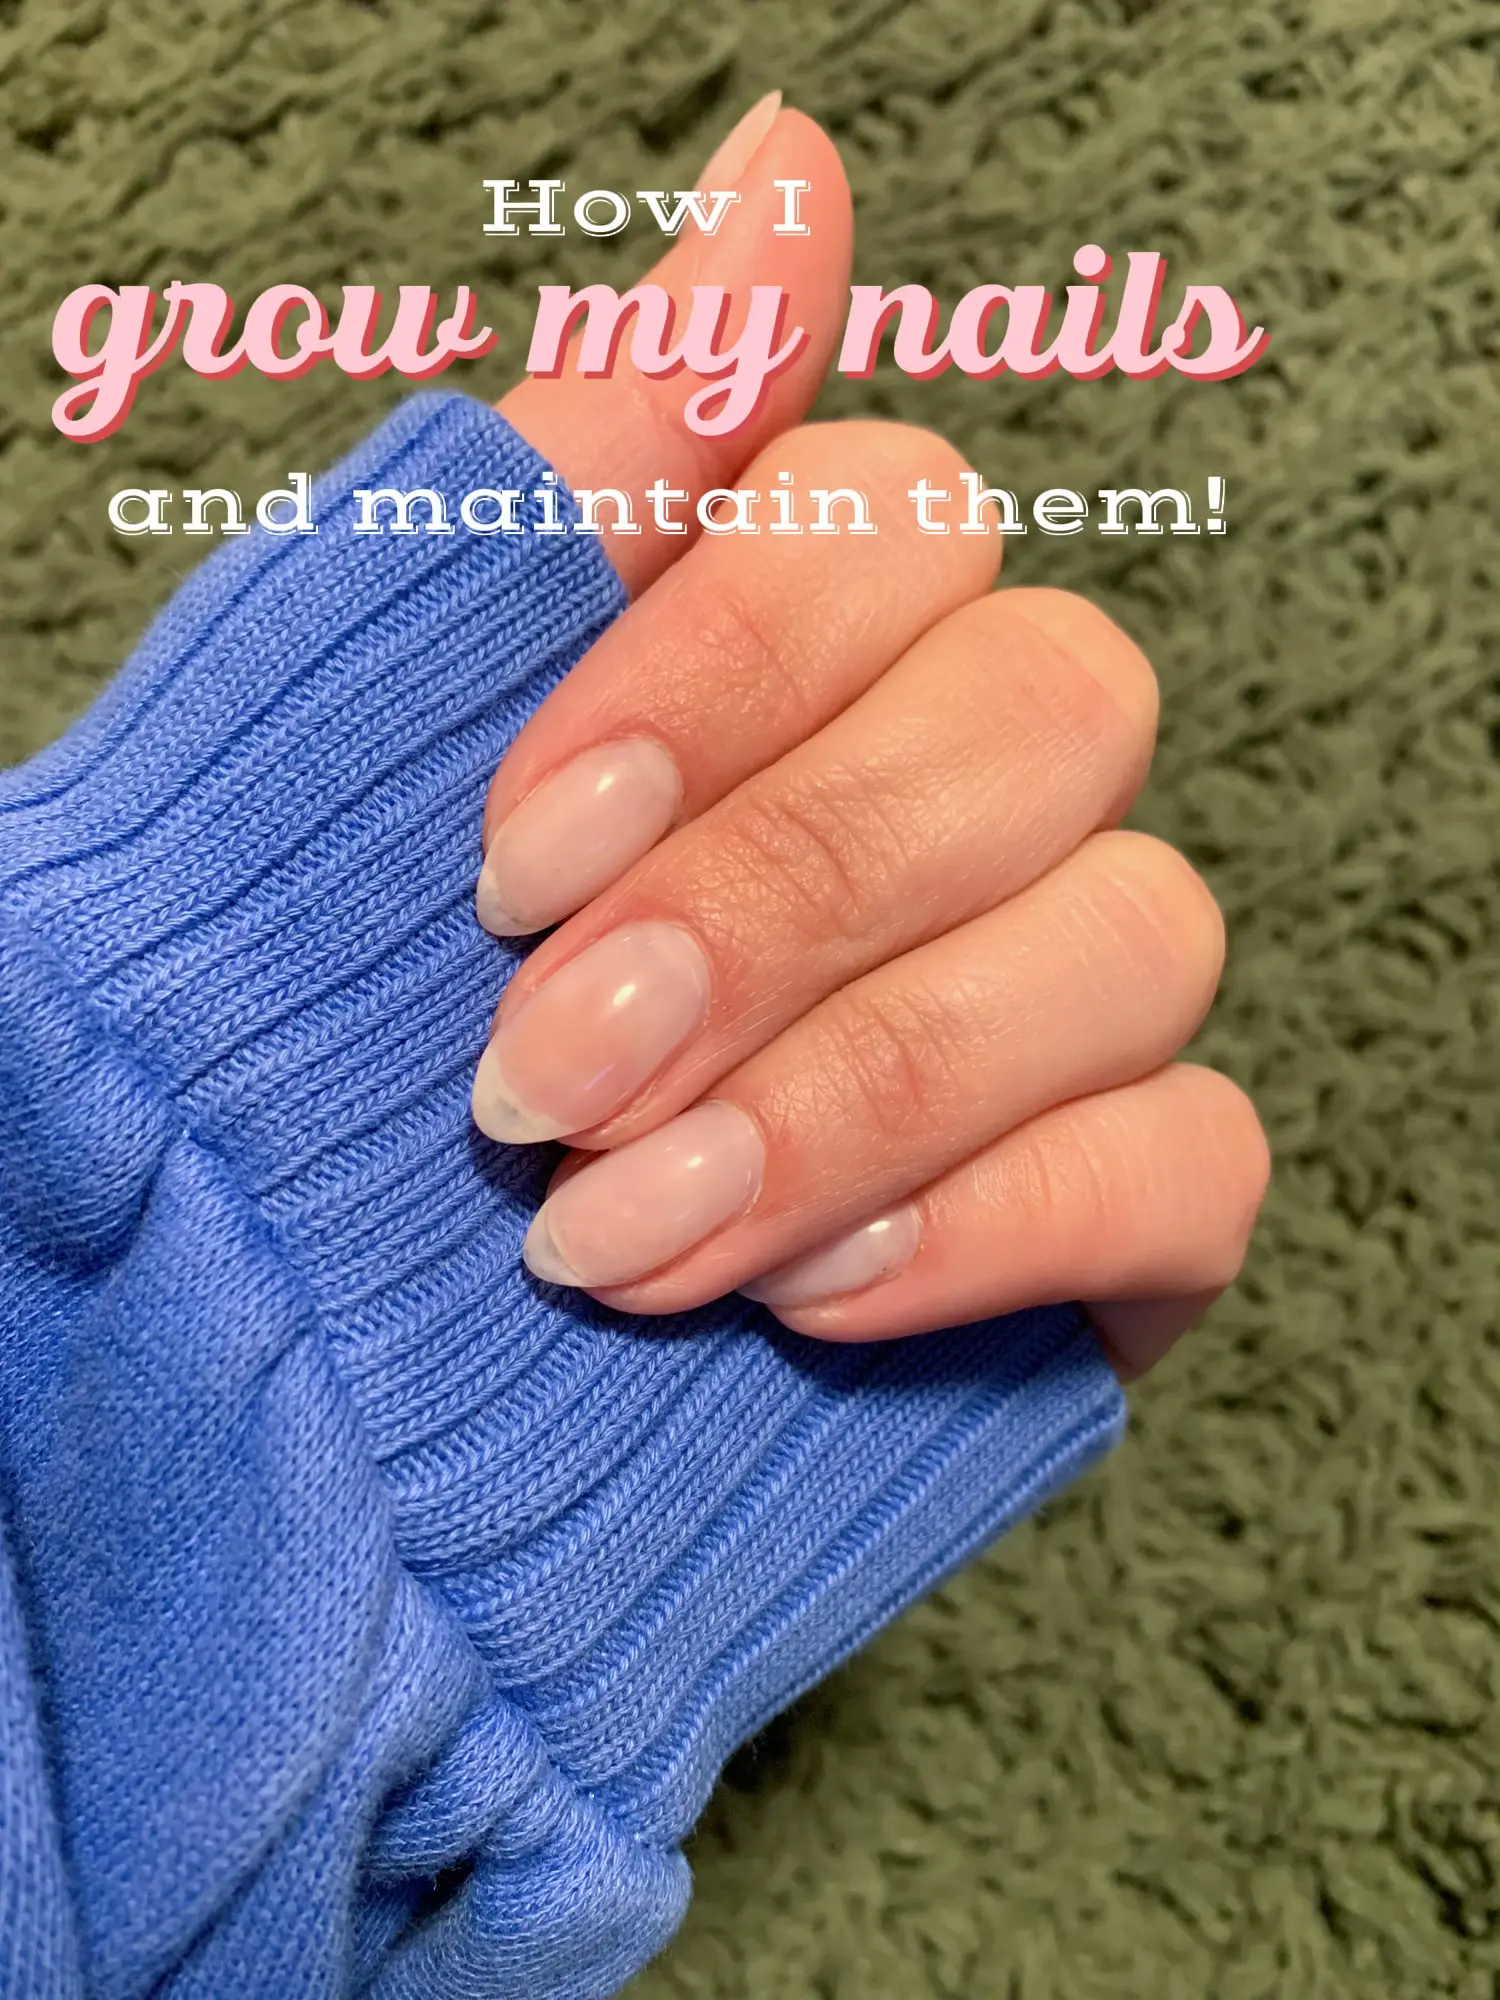 How to grow long nails. #nailgrowth #nailcare #naturalnails